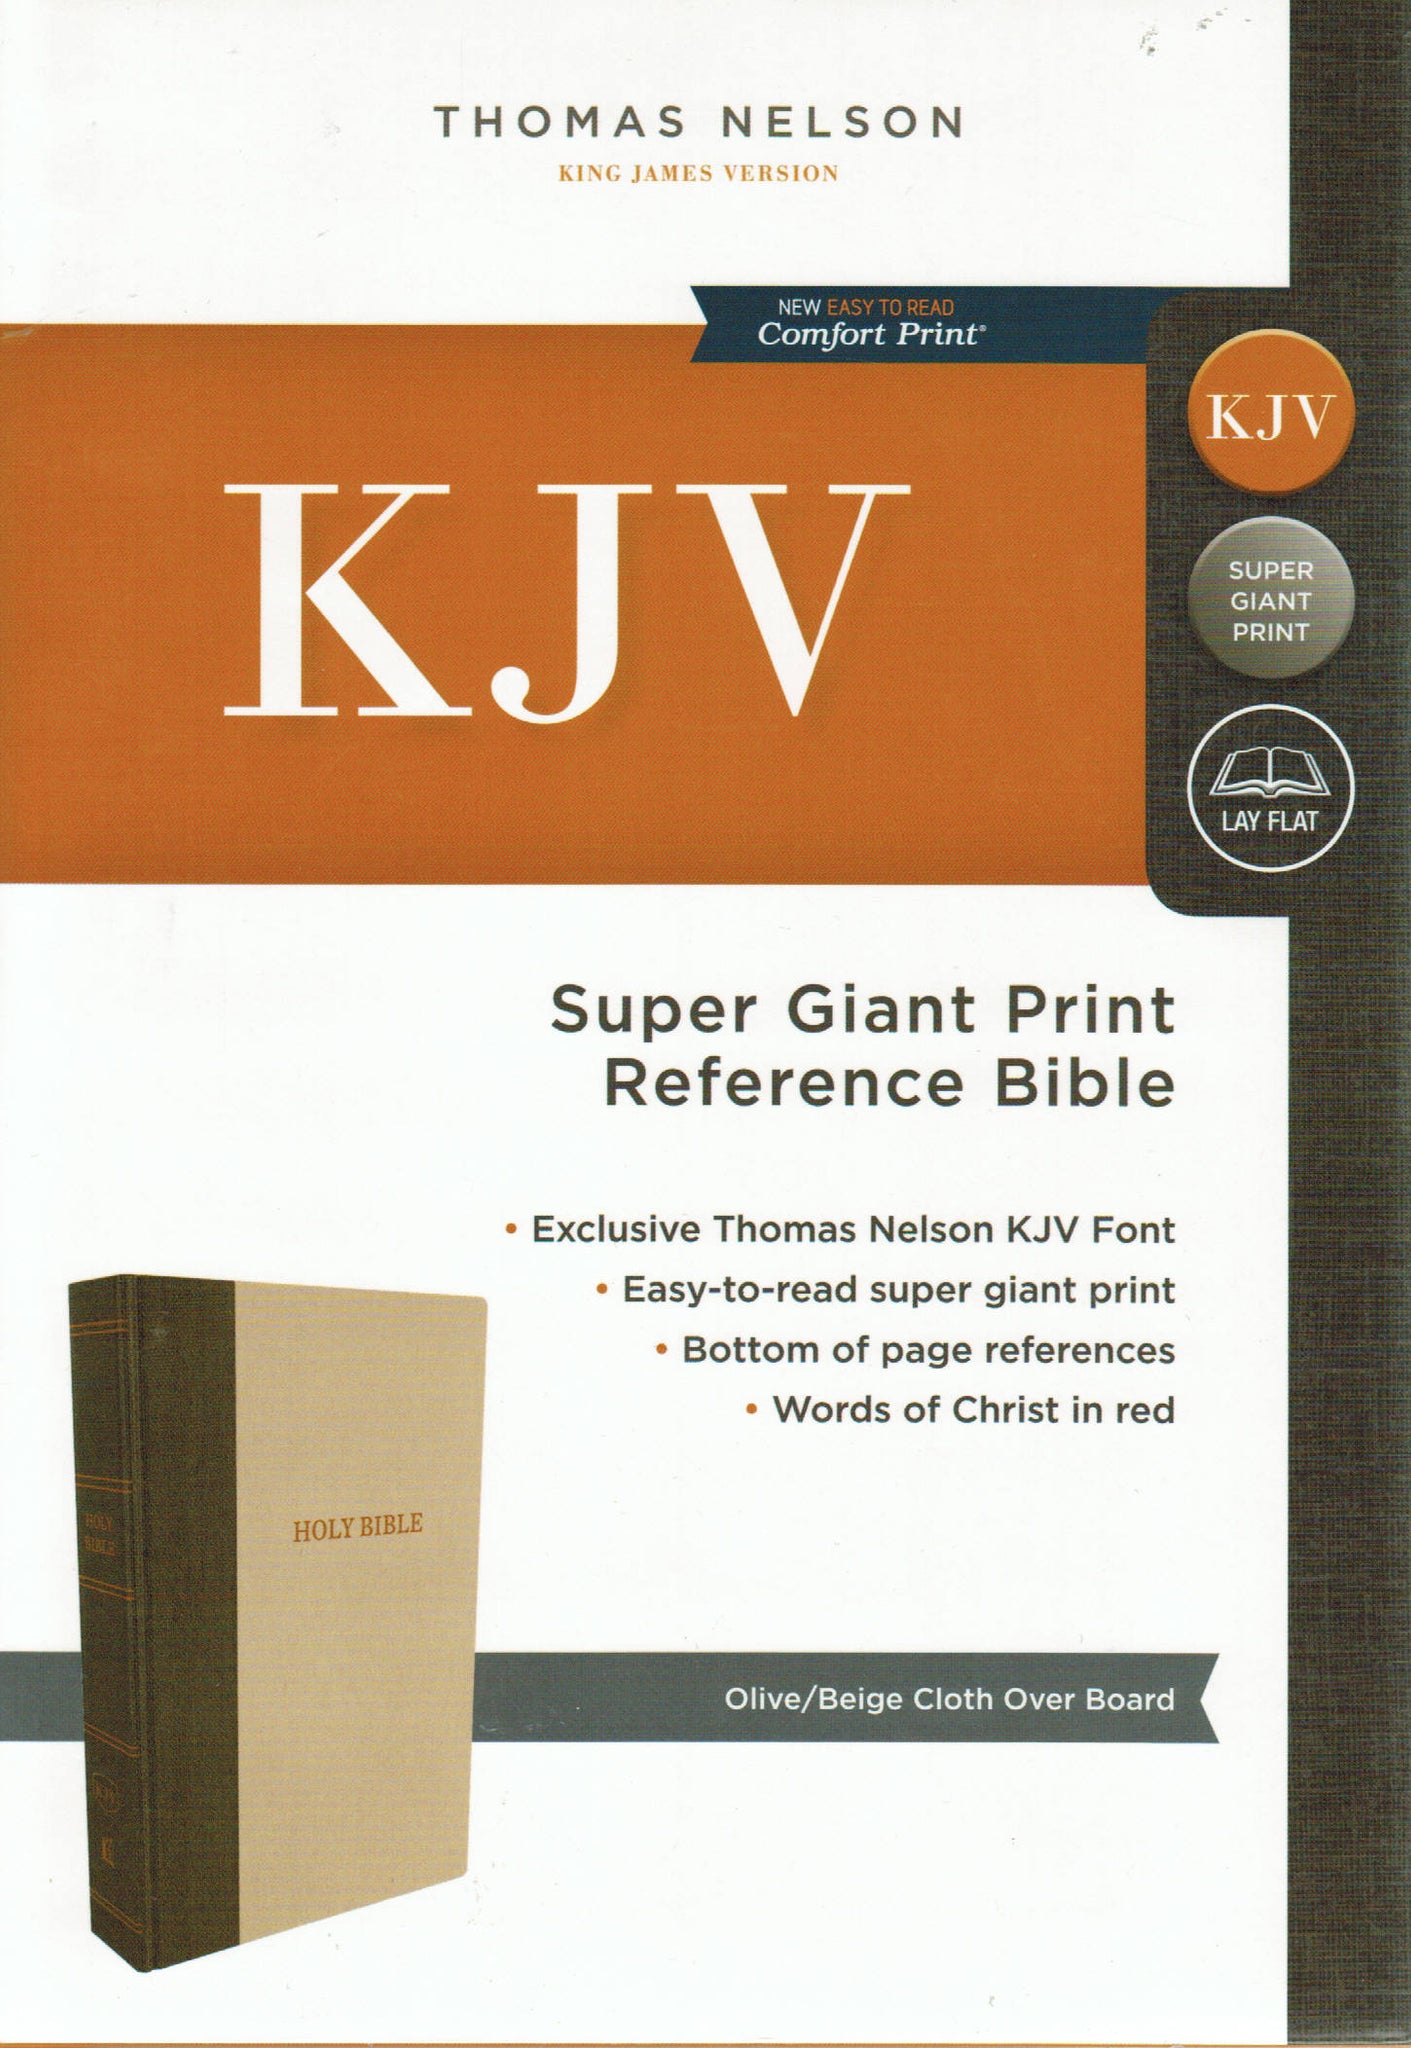 KJV Bible - Thomas Nelson Super Giant Print Reference (Hardcover)